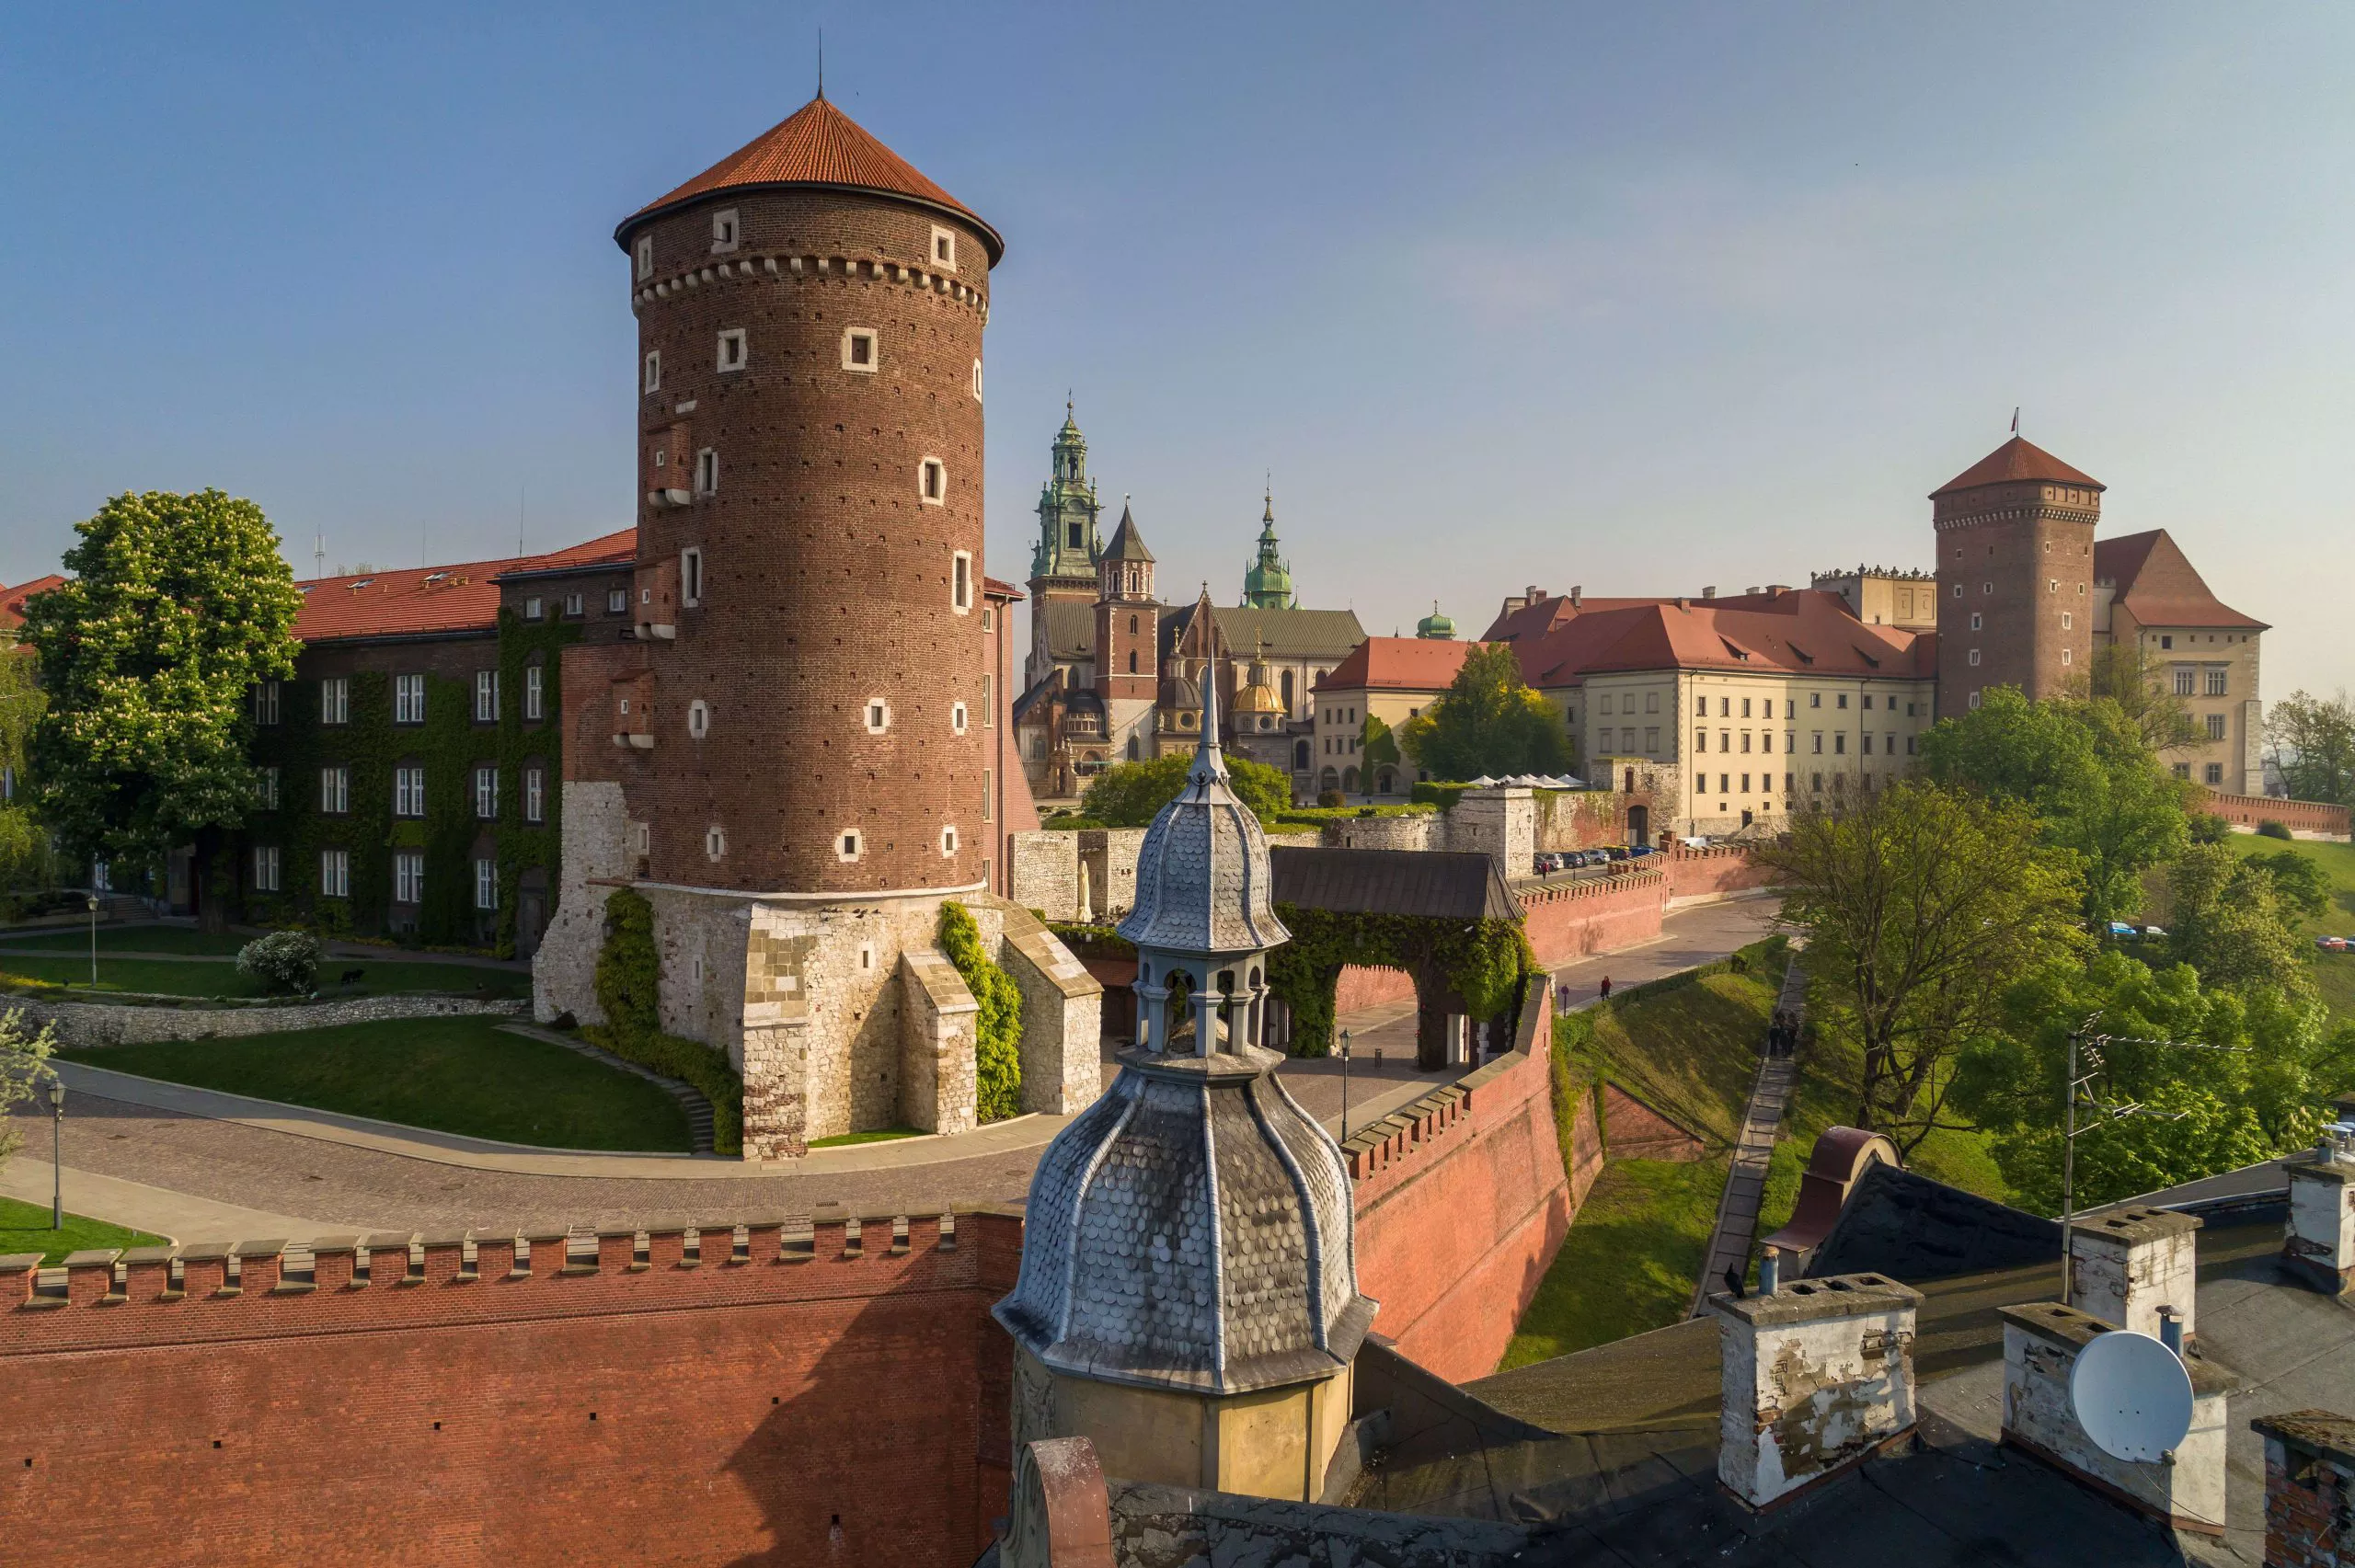 Das Foto zeigt einen Teil des Schlossgebäudes aus der Vogelperspektive. Im Vordergrund ist ein runder Turm zu sehen und im Hintergrund die Kathedrale